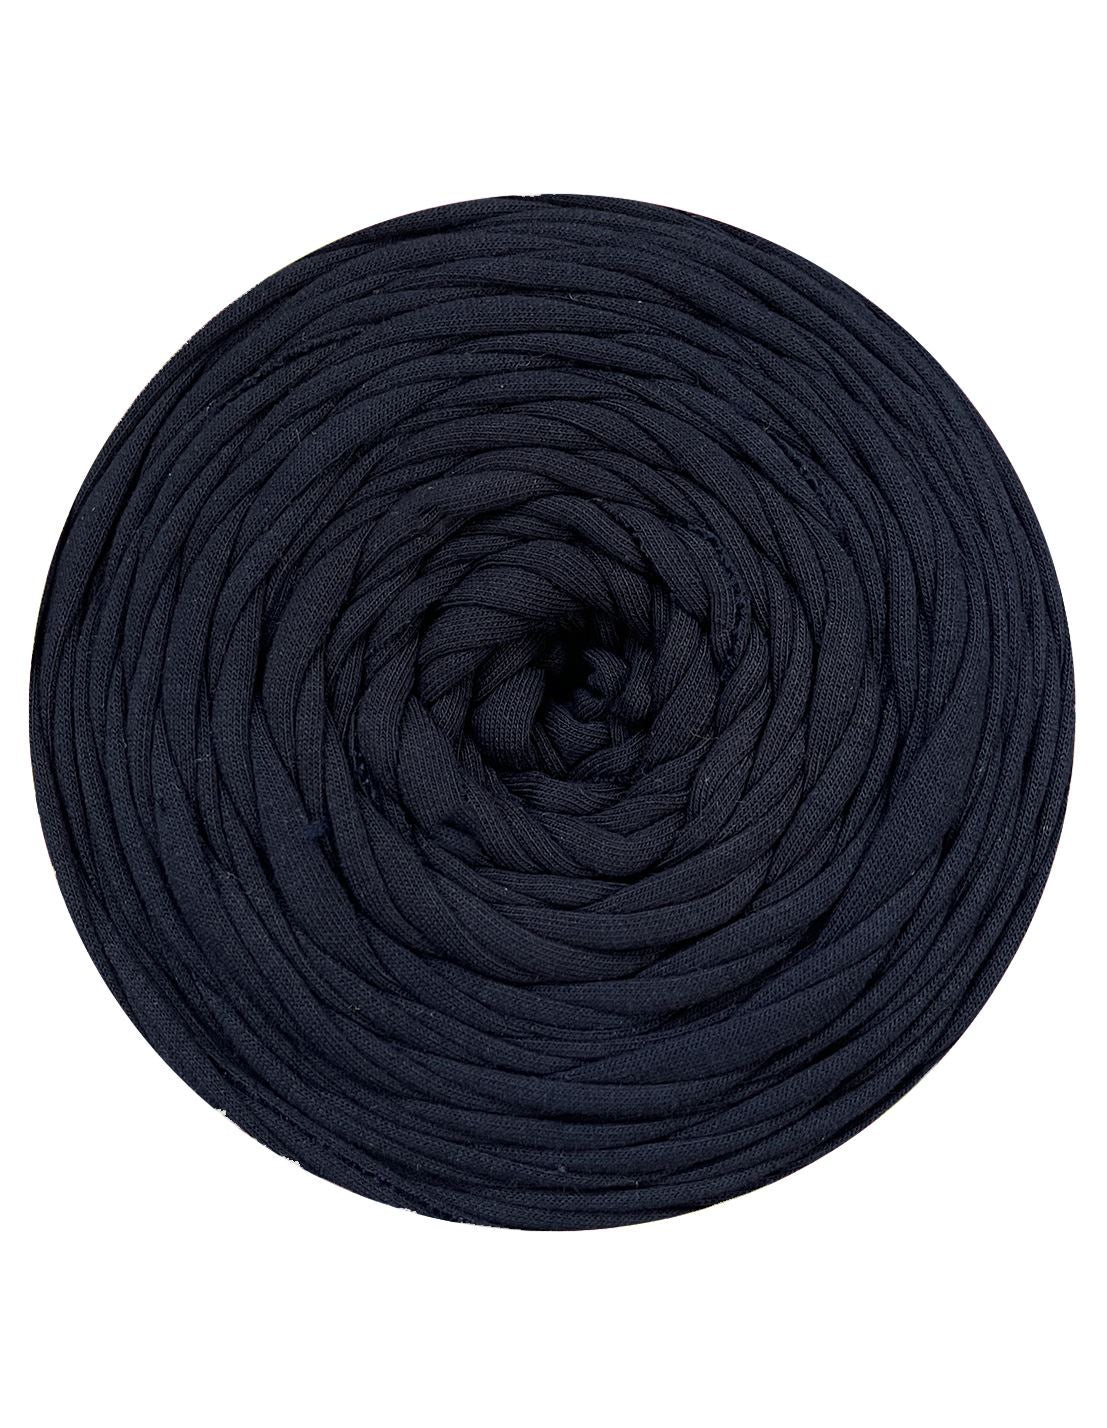 Deep navy t-shirt yarn by Rescue Yarn (100-120m)